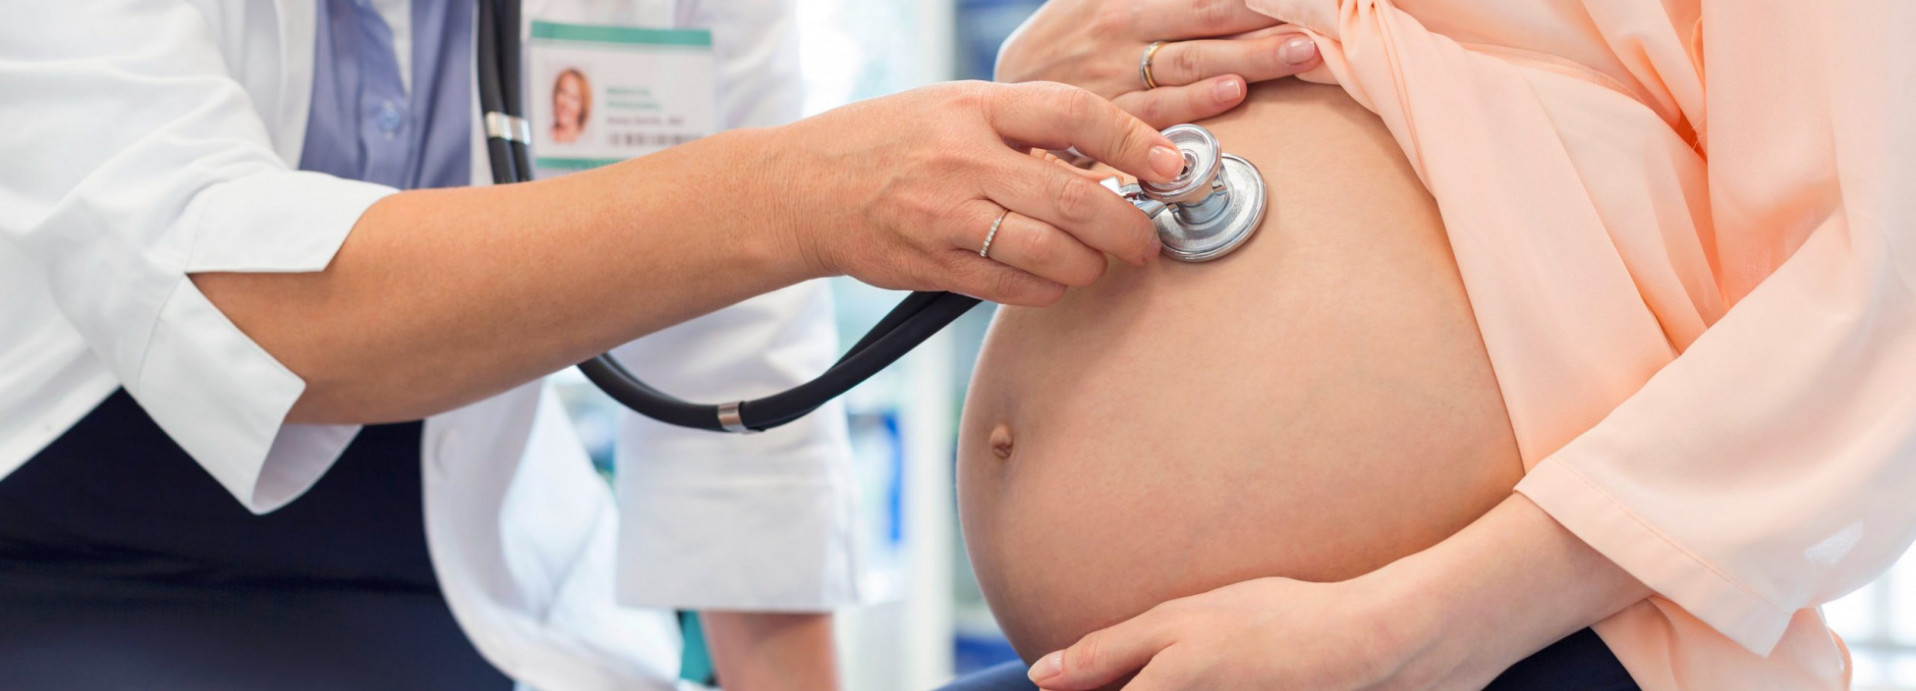 Ведение беременности и обследование беременных женщин